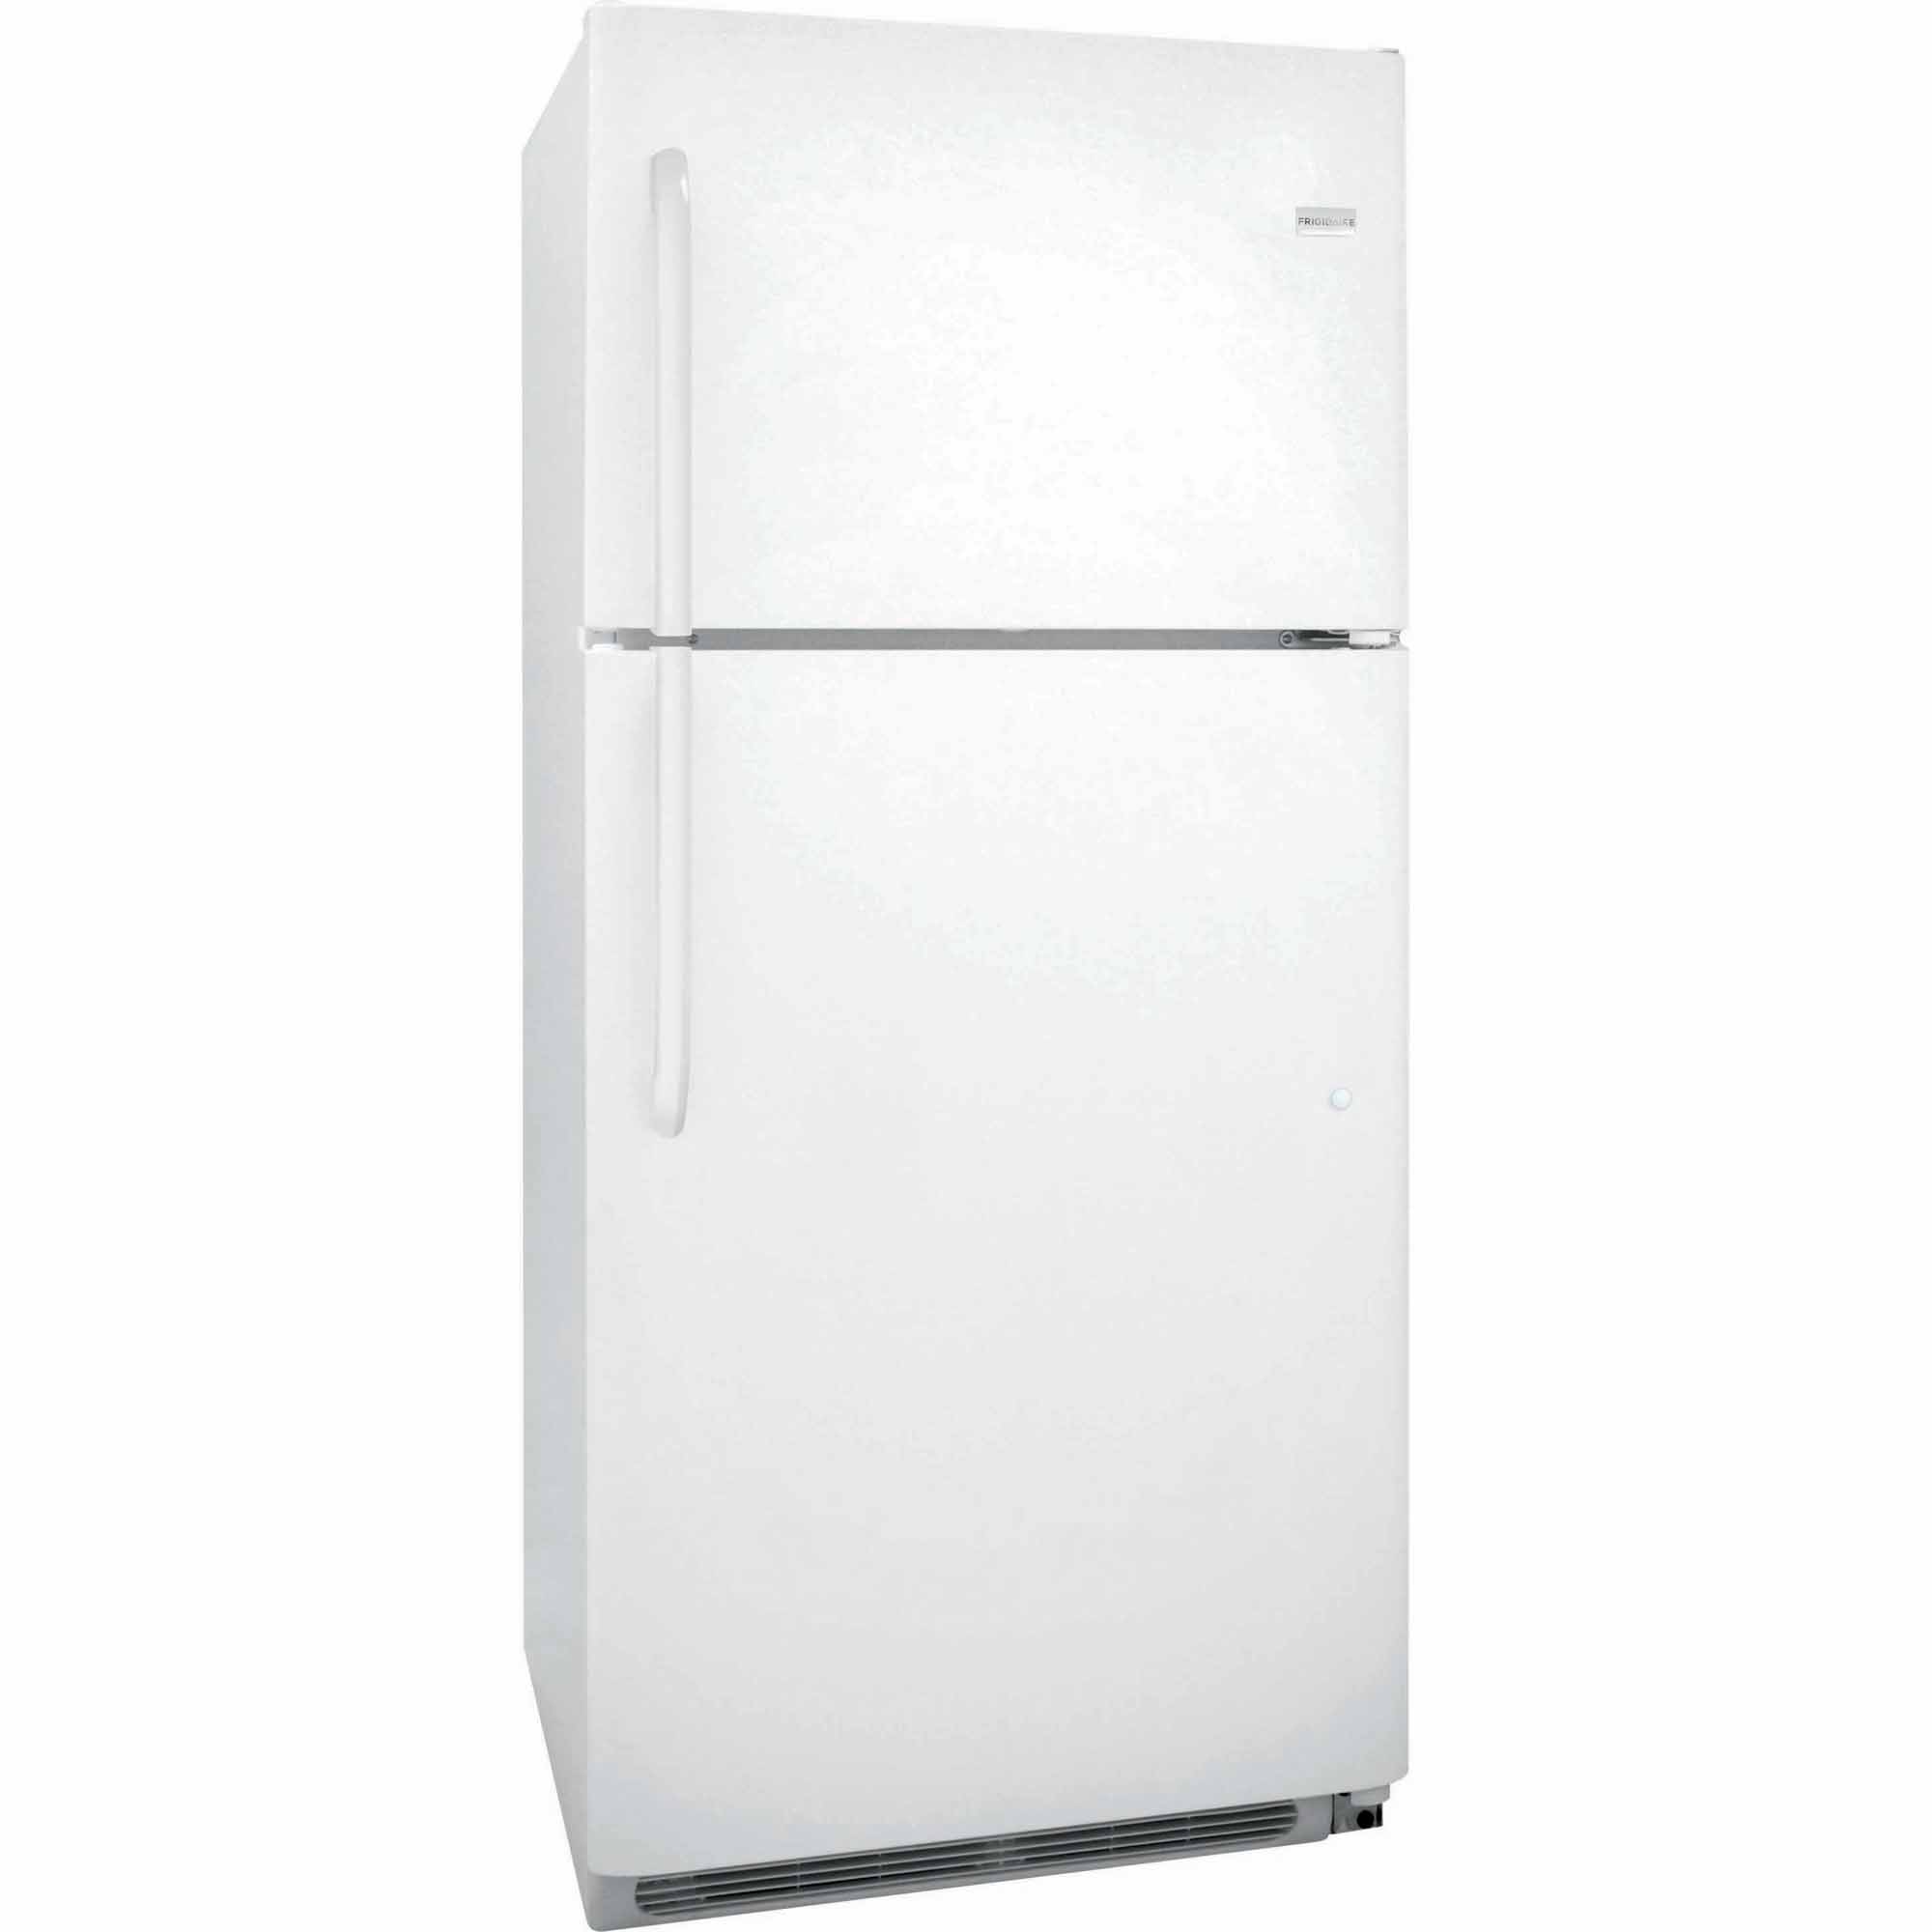 Frigidaire FFTR2021QW 20.4 cu. ft. Top Freezer Refrigerator - White